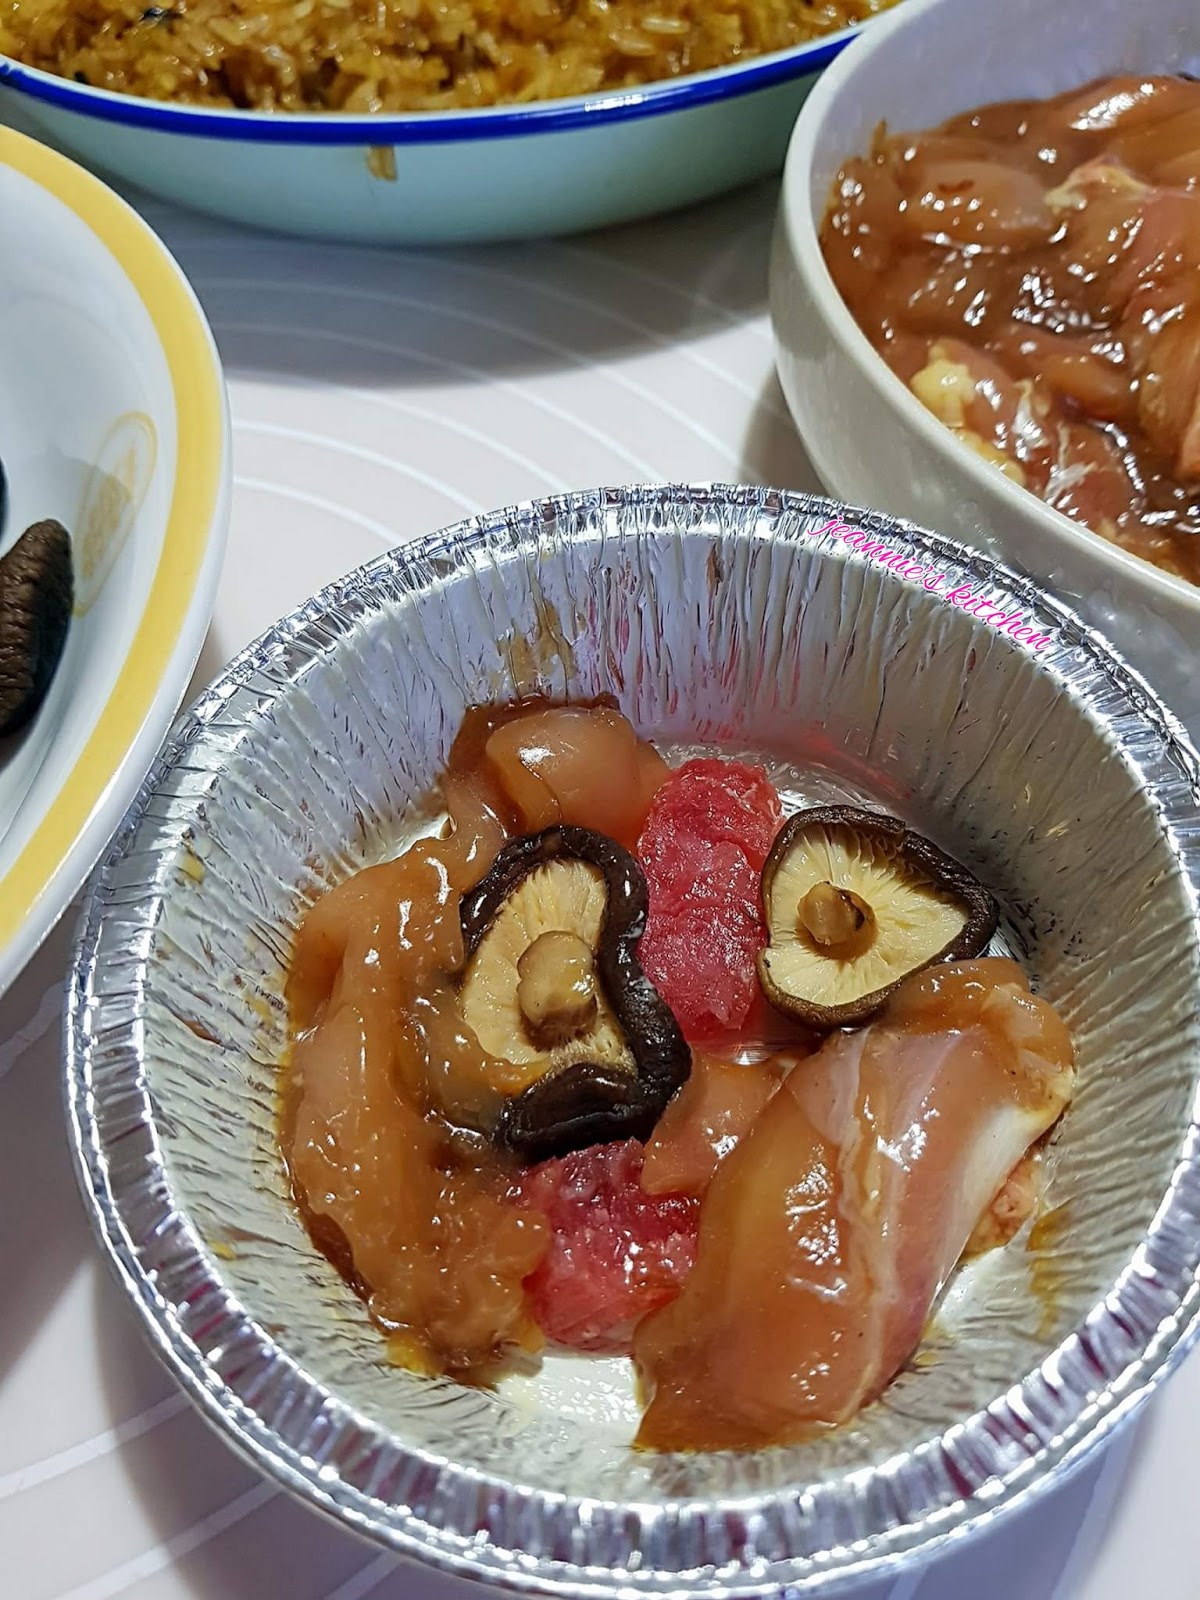 Jeannie62 Kitchen: LO MAI GAI 糯米鸡 (STEAMED GLUTINOUS RICE WITH CHICKEN)